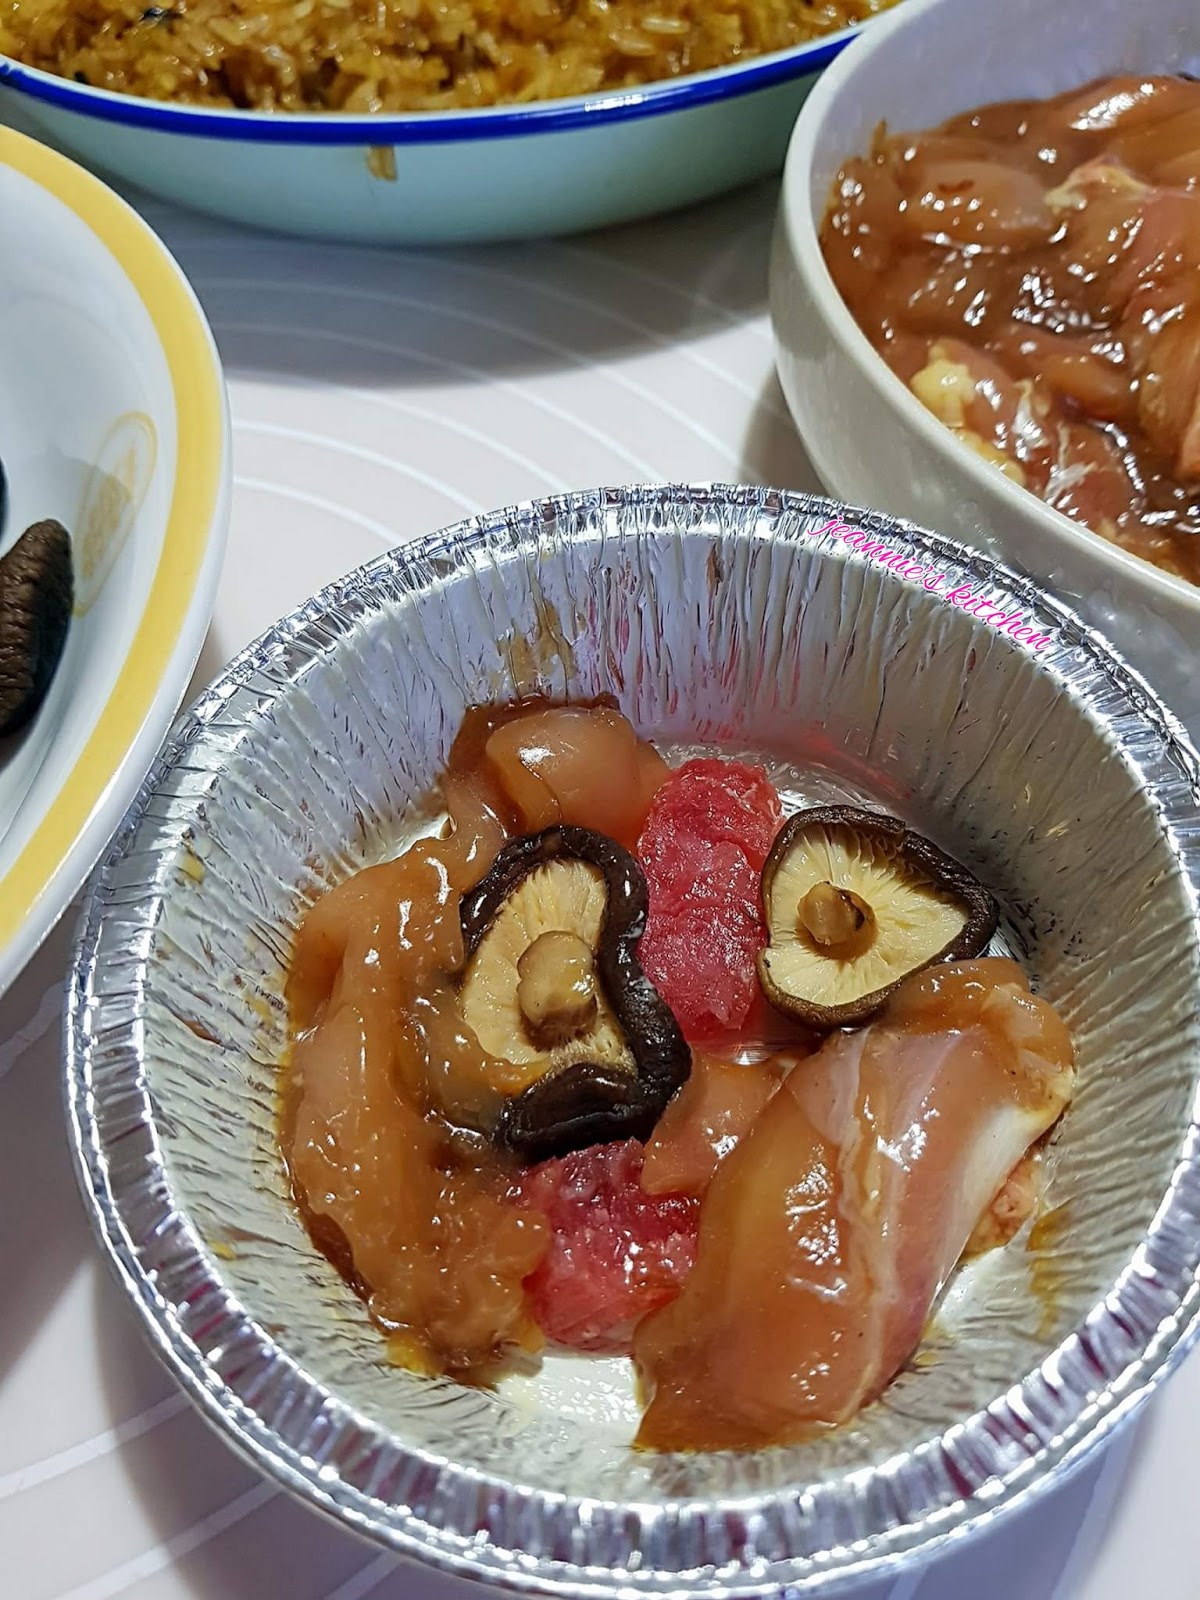 Jeannie62 Kitchen: LO MAI GAI 糯米鸡 (STEAMED GLUTINOUS RICE WITH CHICKEN)